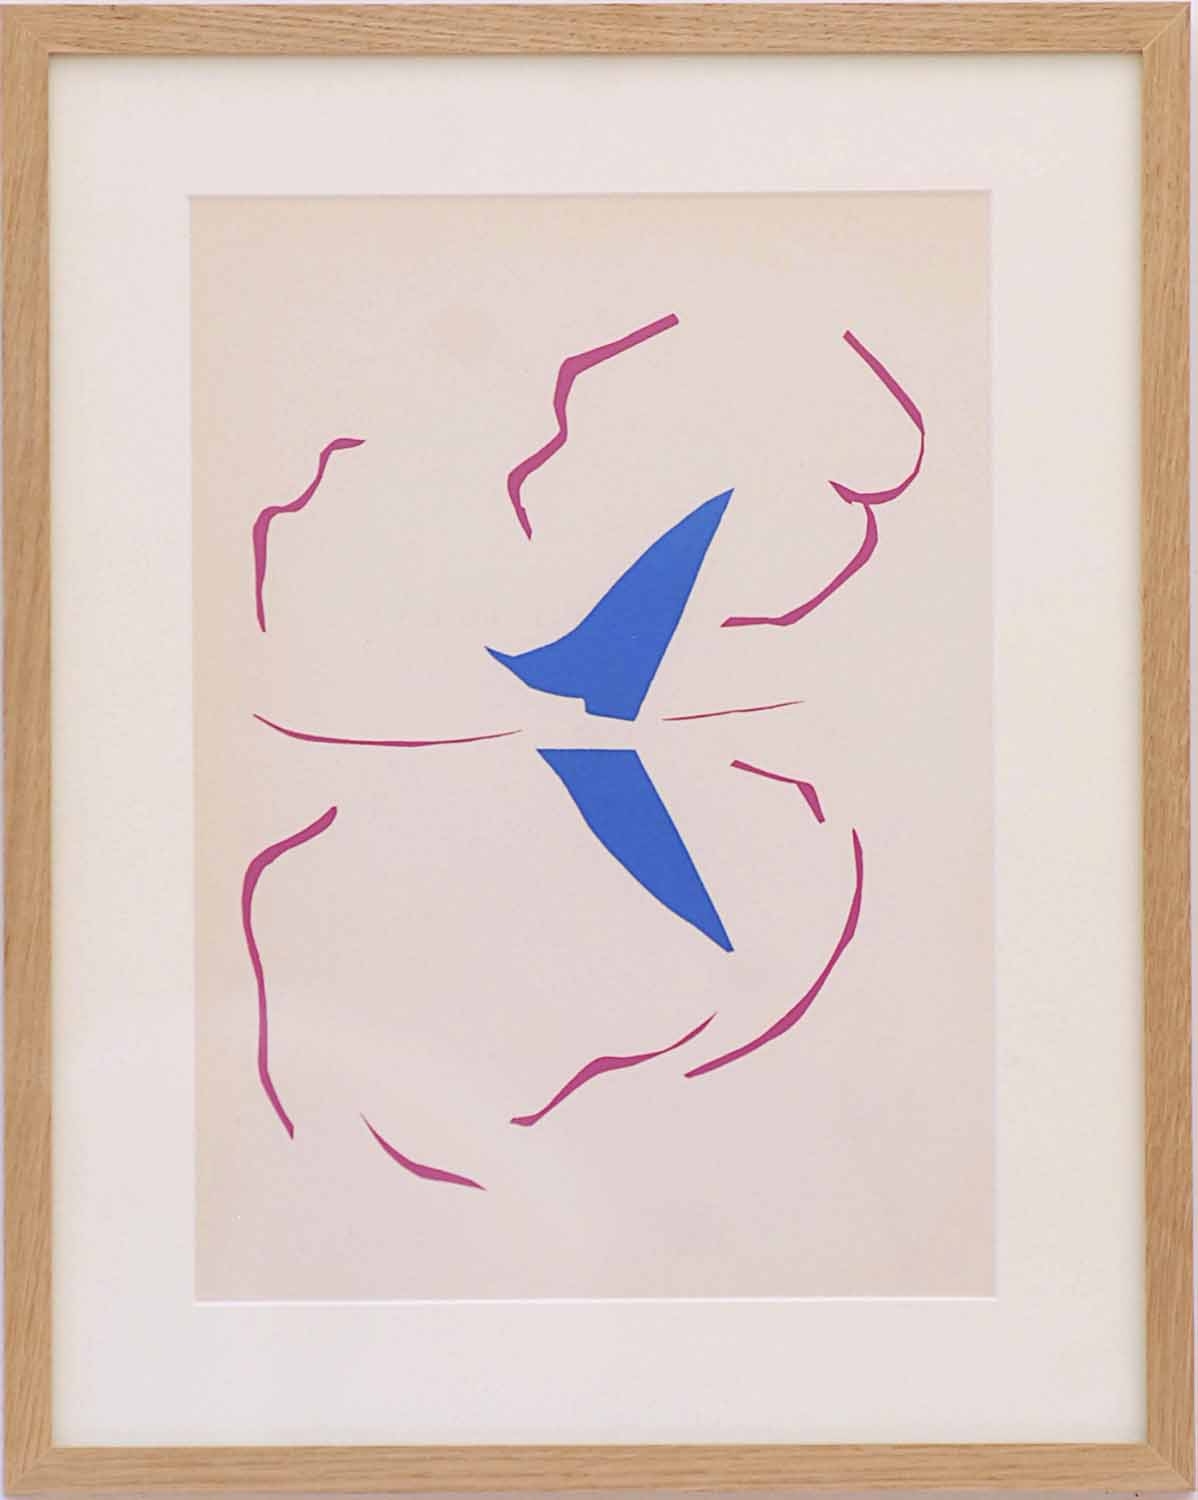 Bateau by Henri Matisse, 1954